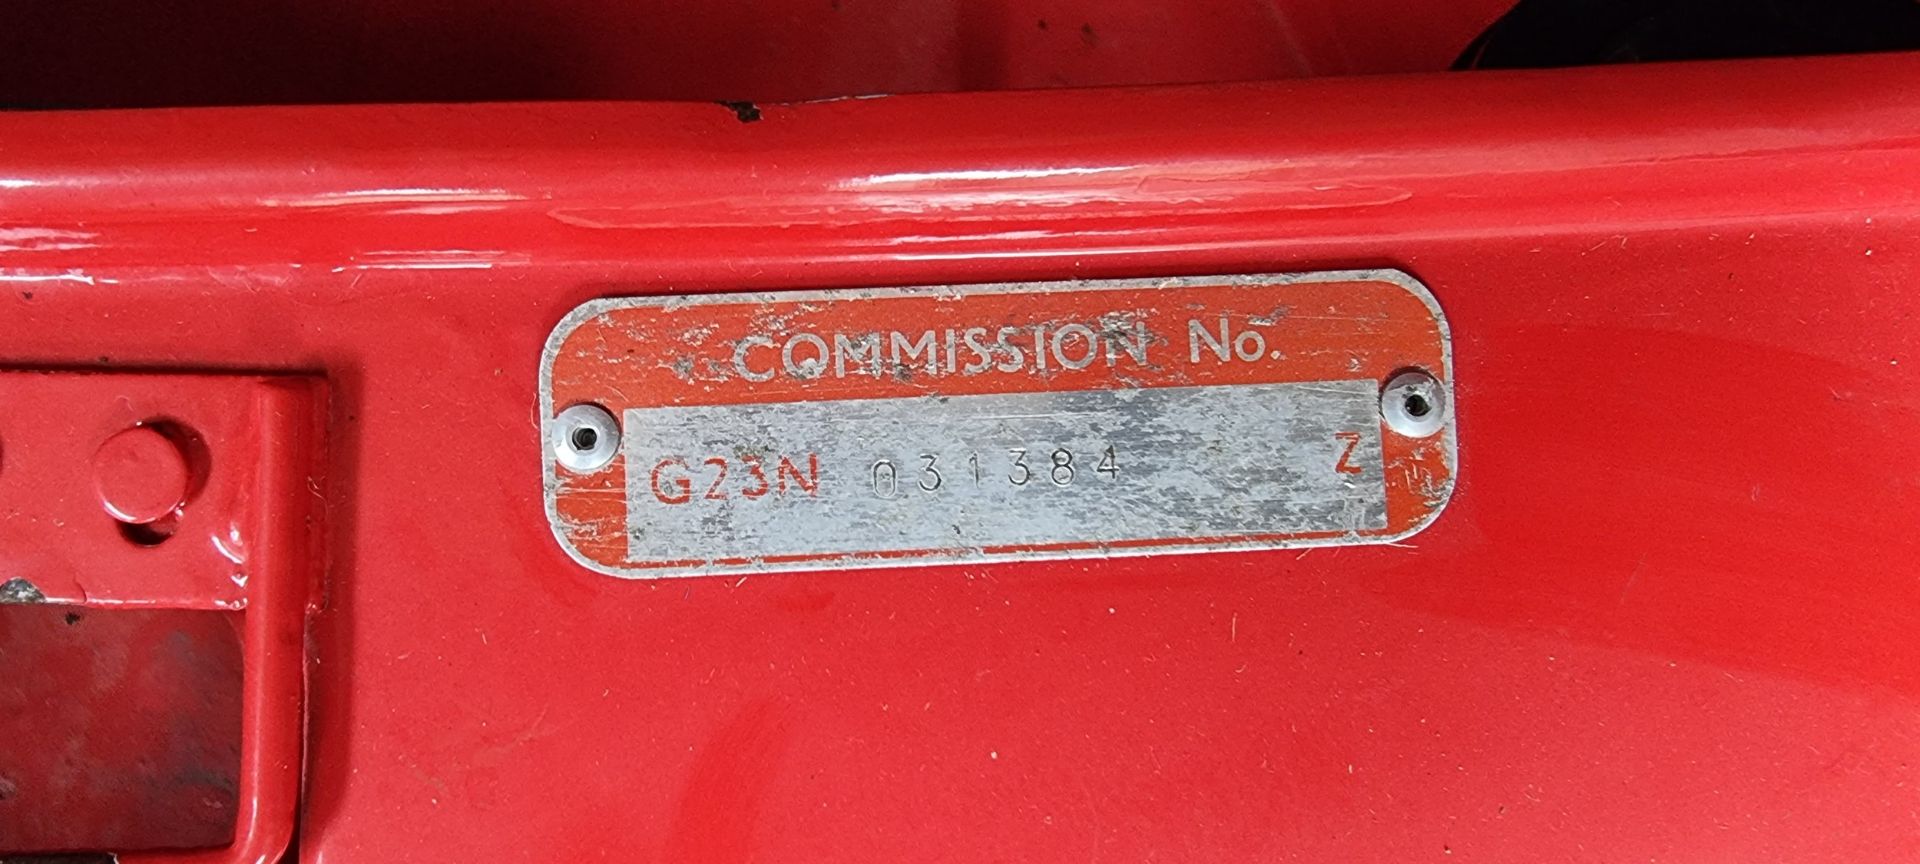 1971 MGB Roadster, 1798cc. Registration number JTF 420K. Commission number G23N 031834. Engine - Image 16 of 20